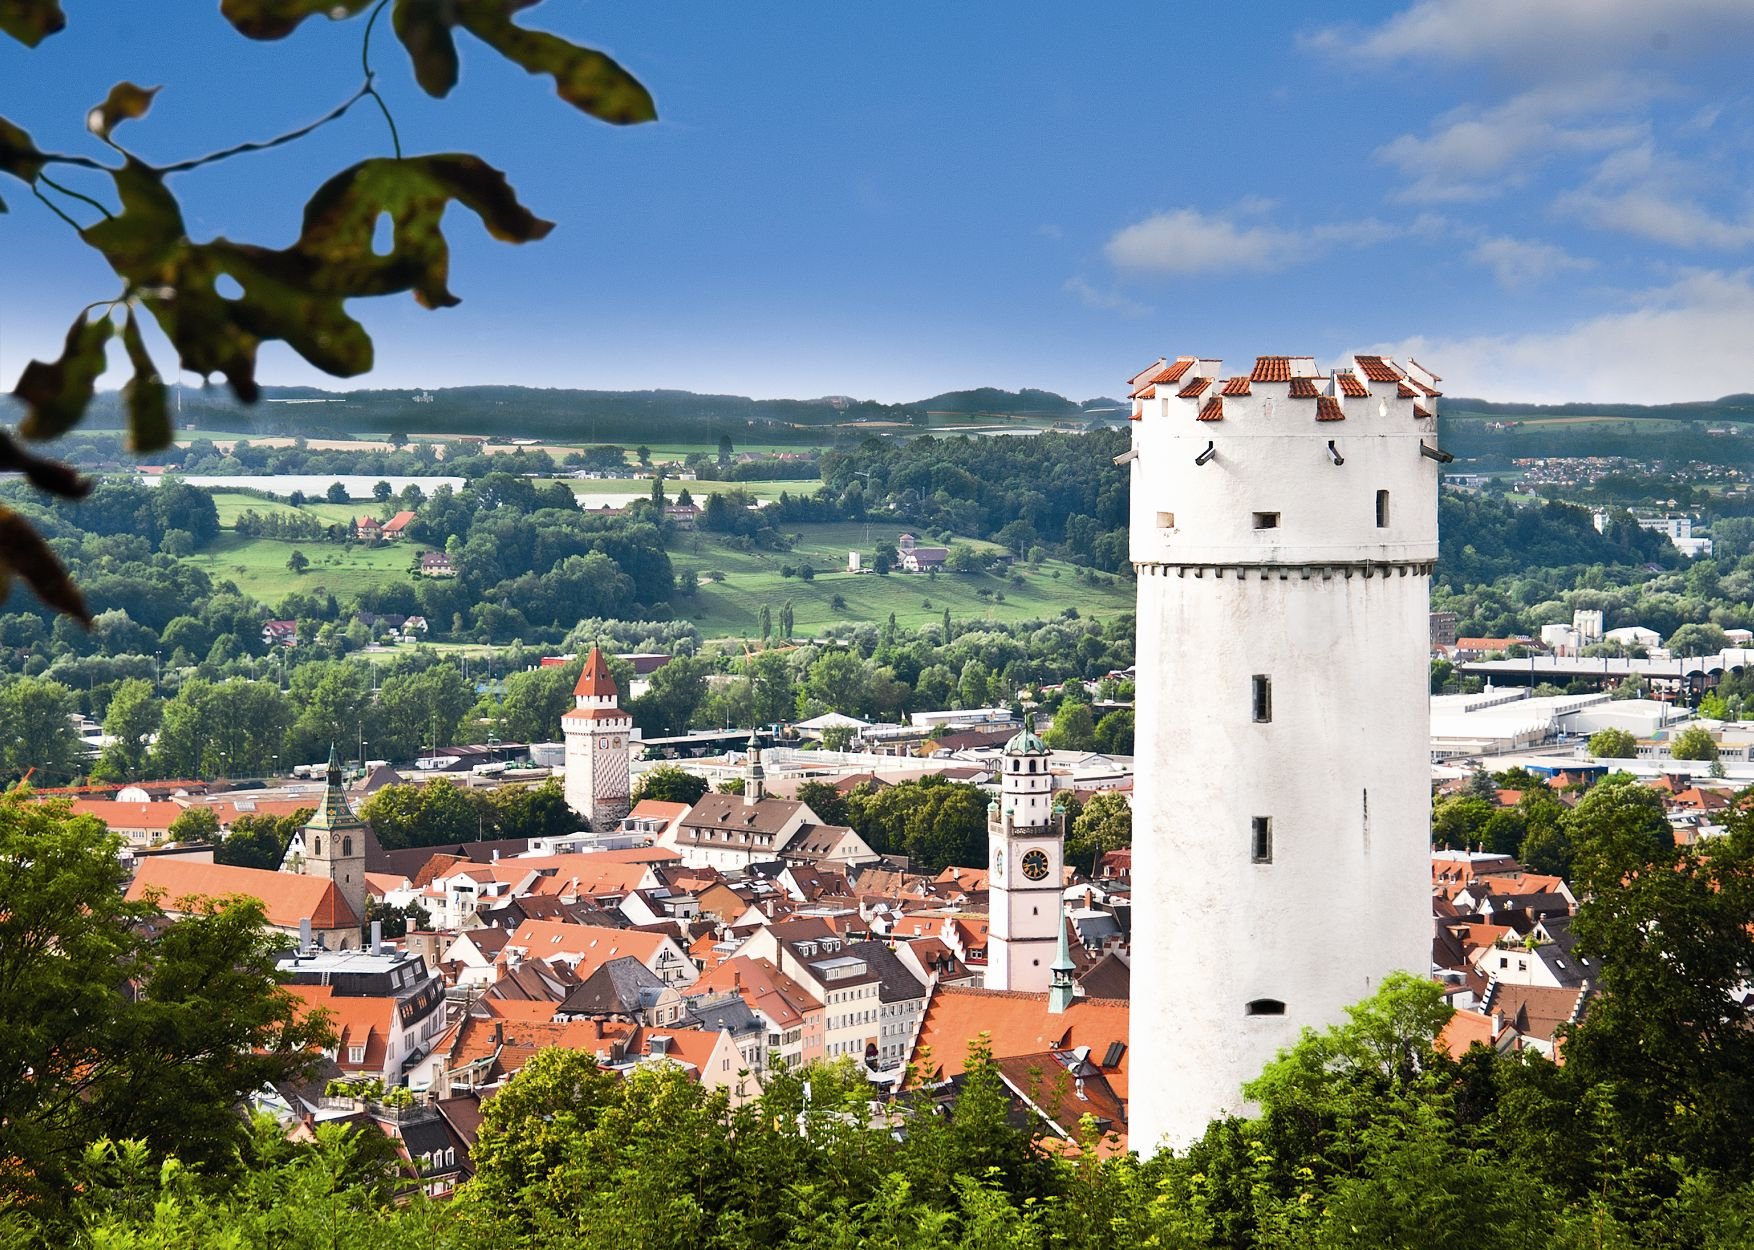 Der Mehlsack auf der rechten Seite des Bildes mit der historischen Stadt Ravensburg im Hintergrund.